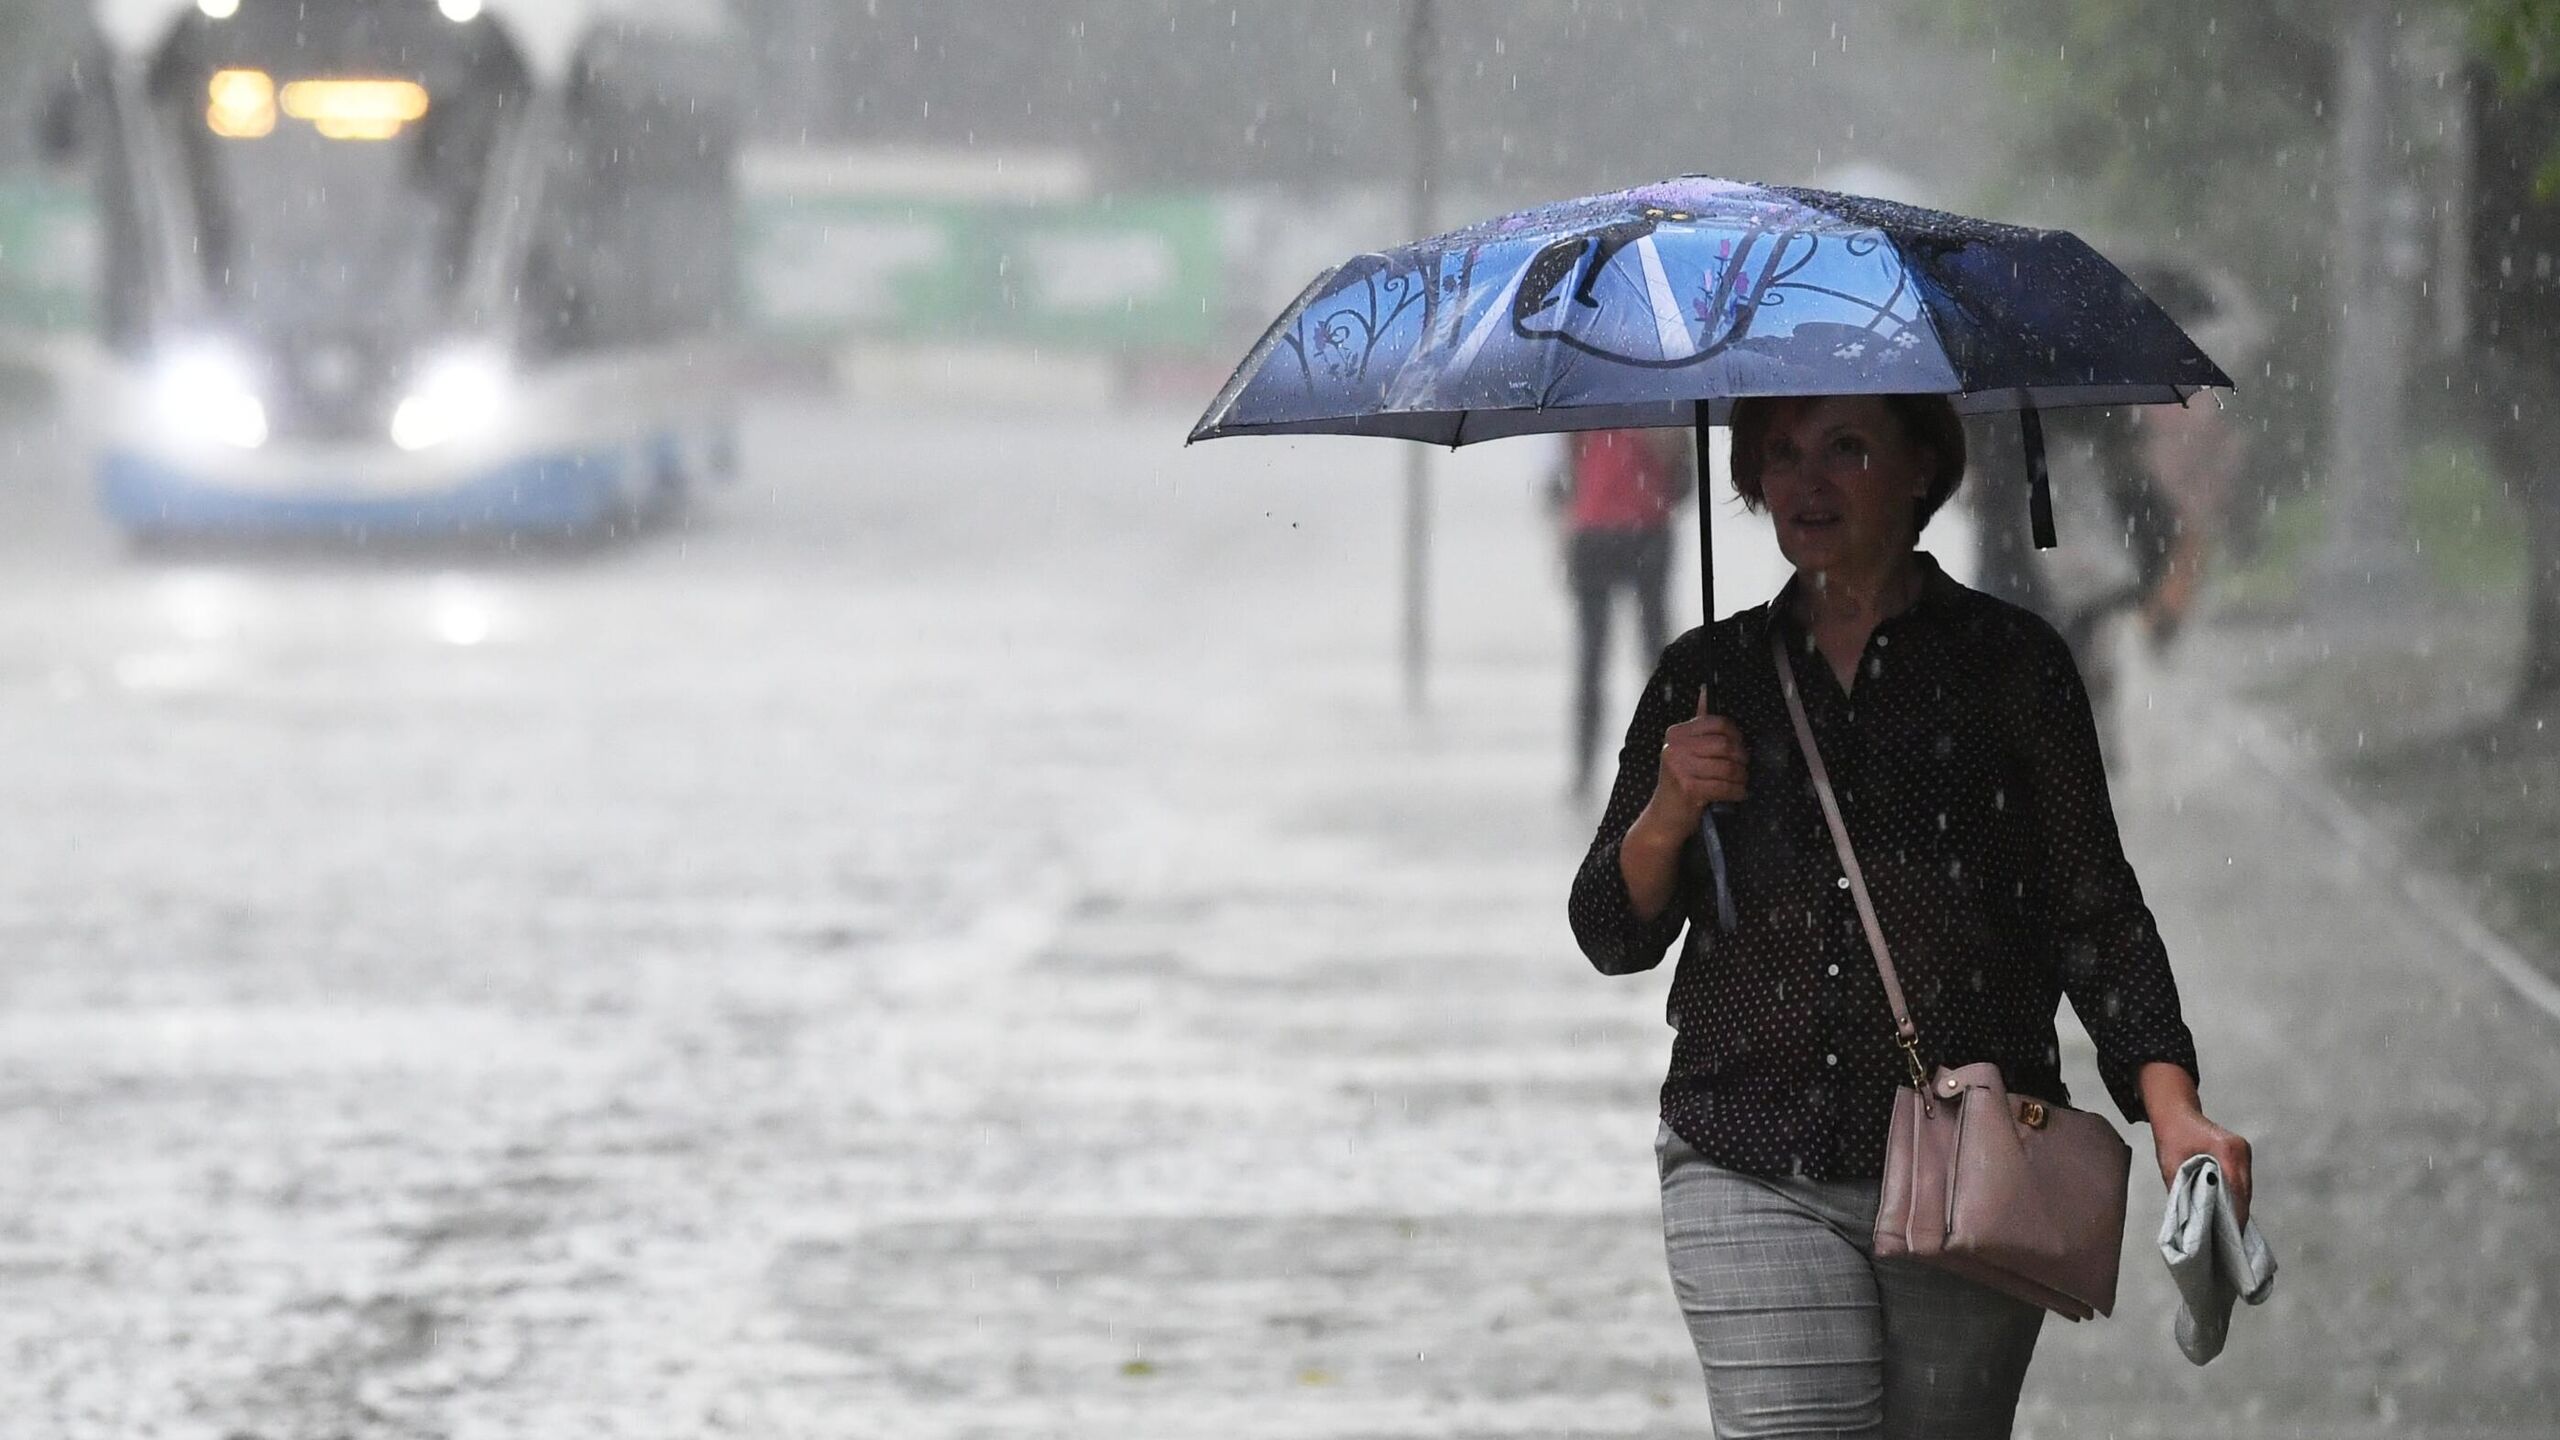 Дождь сильный будет сегодня. Дождливый день. Женщина с зонтом. Под дождем. Небольшой дождь.